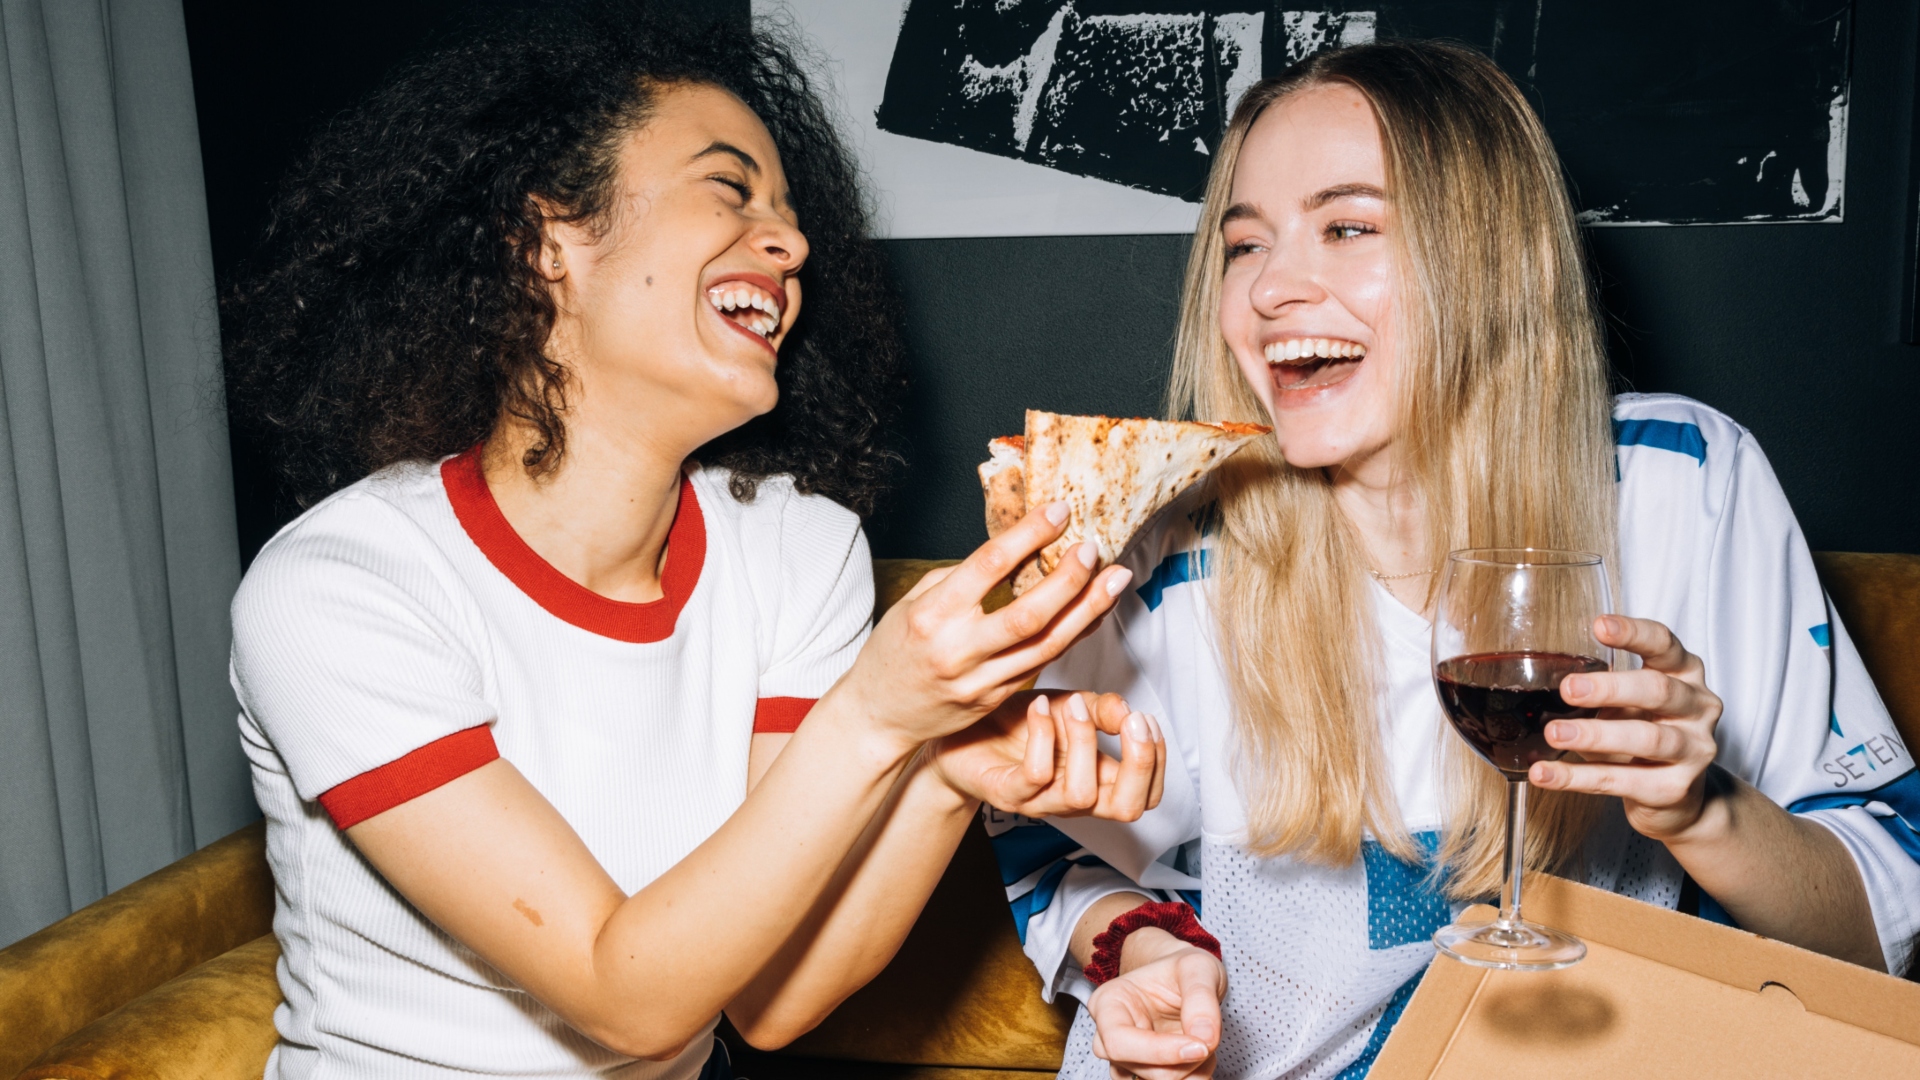 ženy a pizza